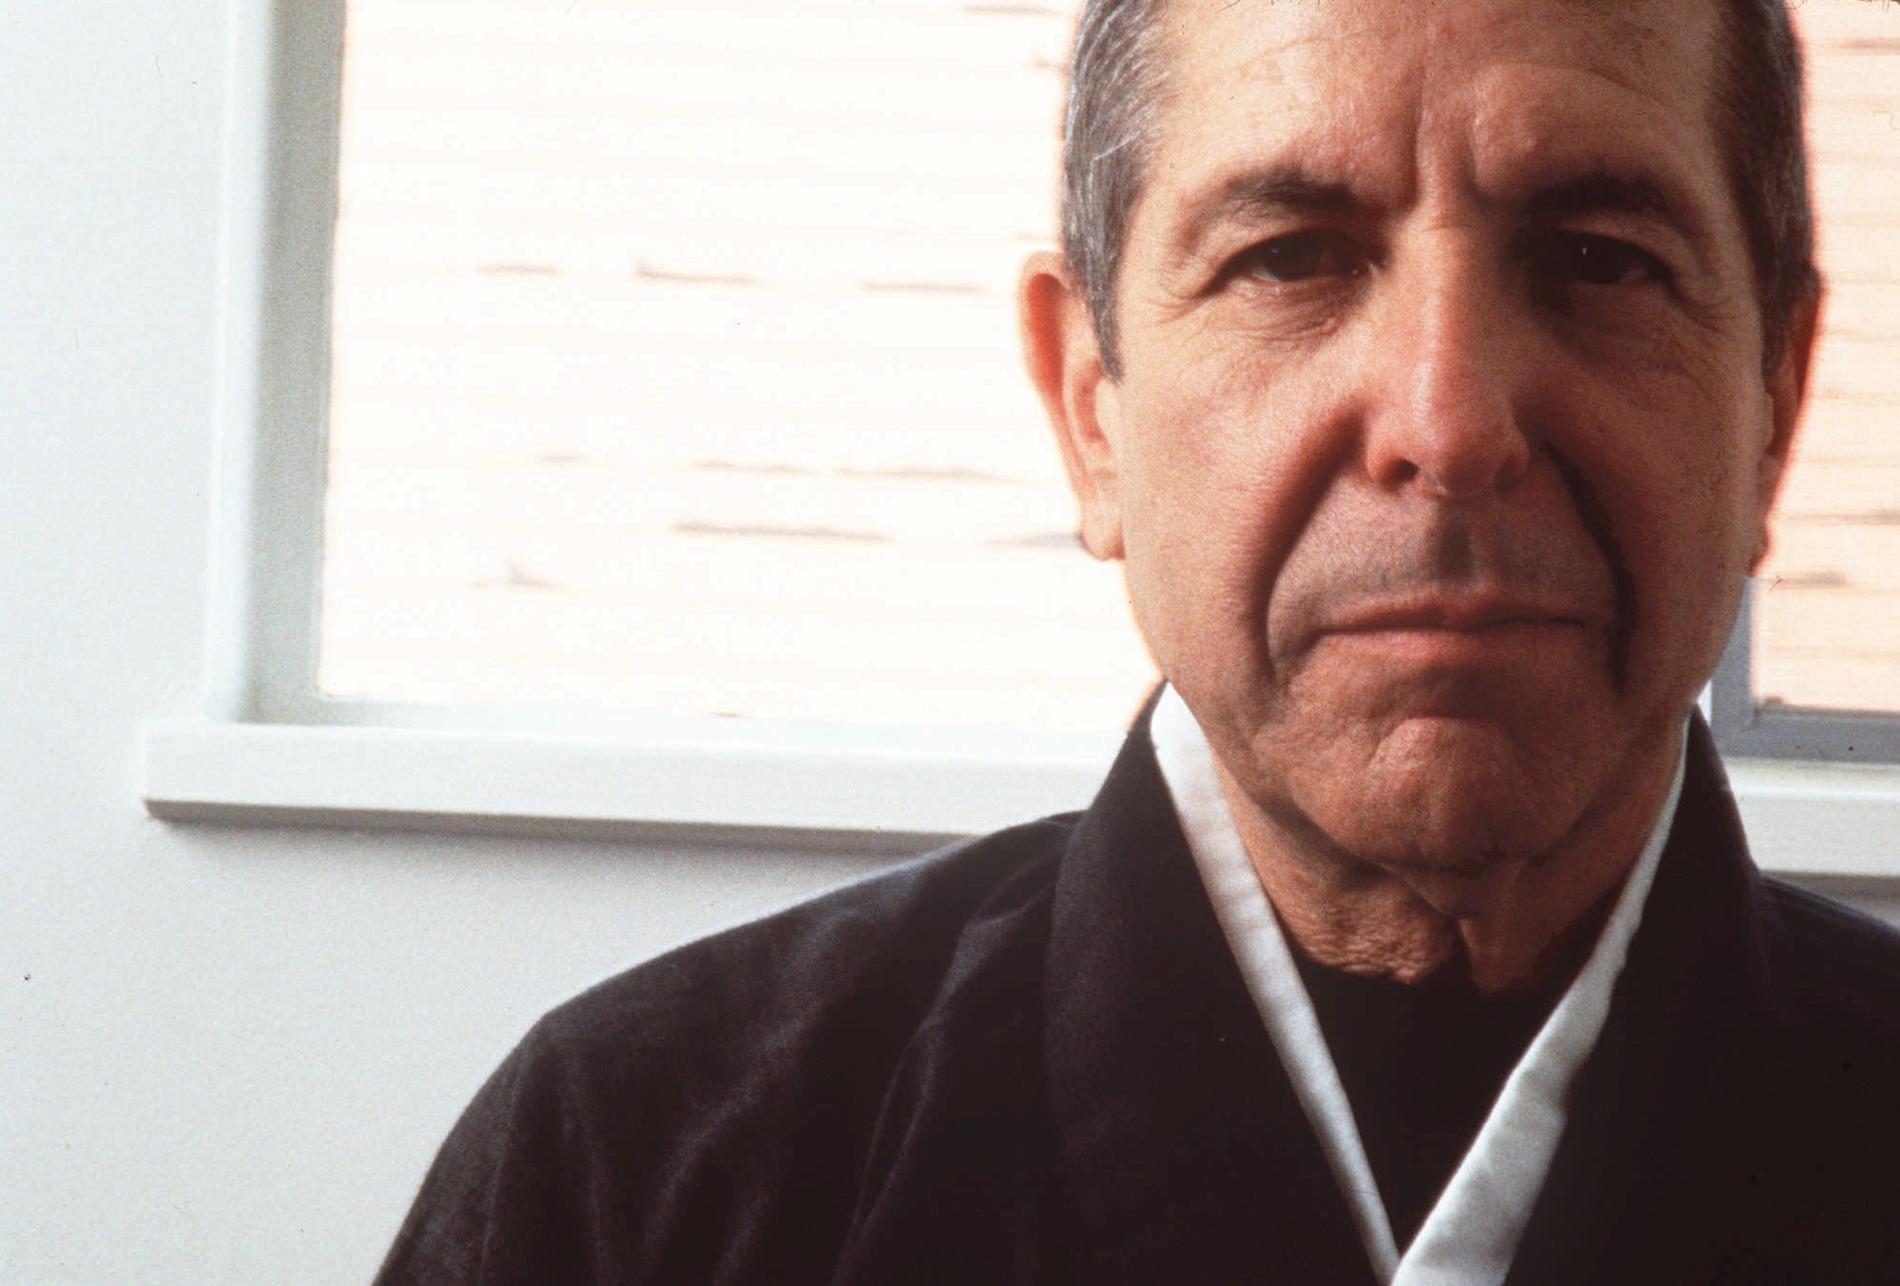 Åren 1994 till 1999 tillbringade Leonard Cohen i ett zenbuddhistiskt kloster vid foten av Mount Baldy utanför Los Angele